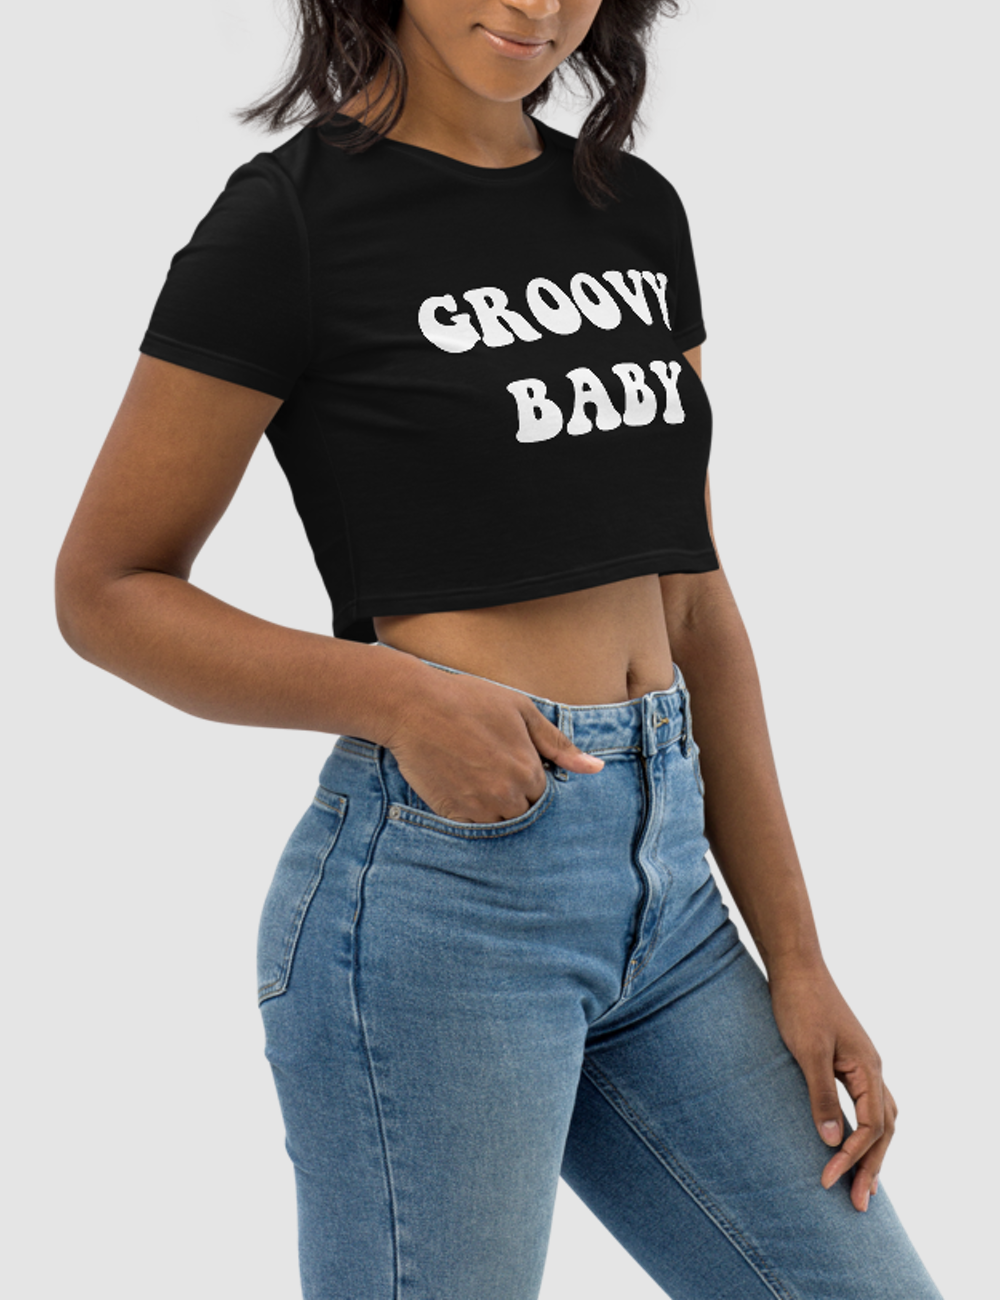 Groovy Baby | Women's Crop Top T-Shirt OniTakai